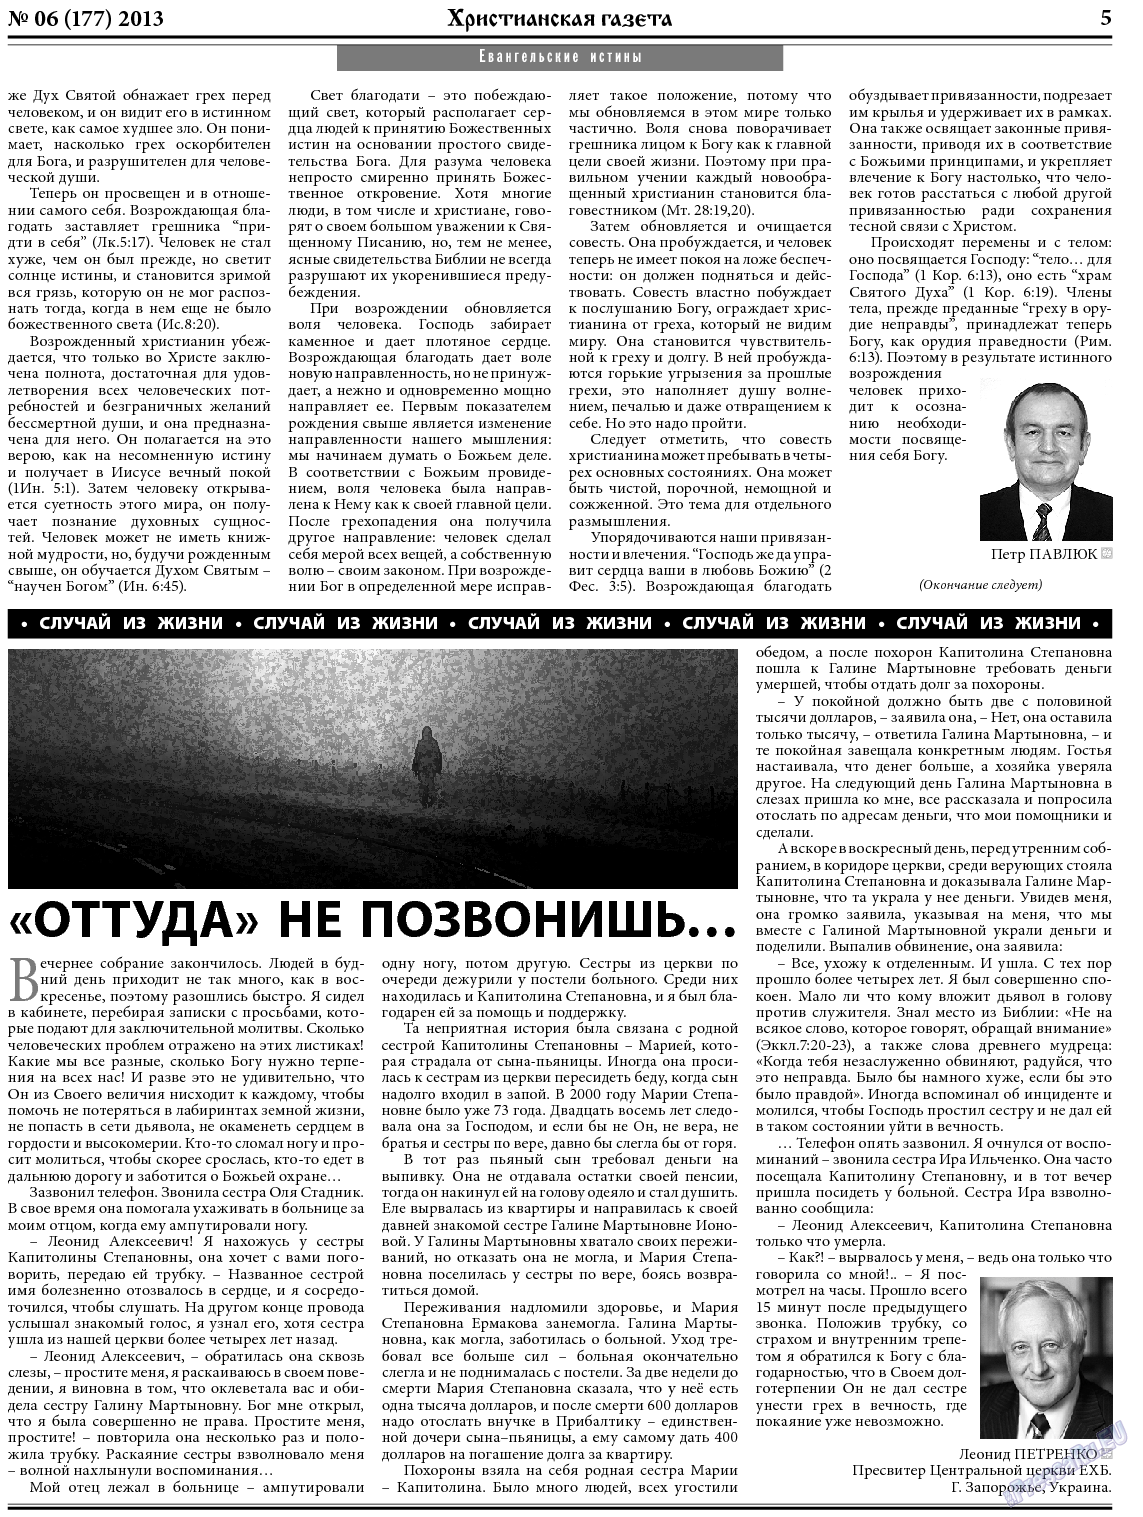 Христианская газета, газета. 2013 №6 стр.5